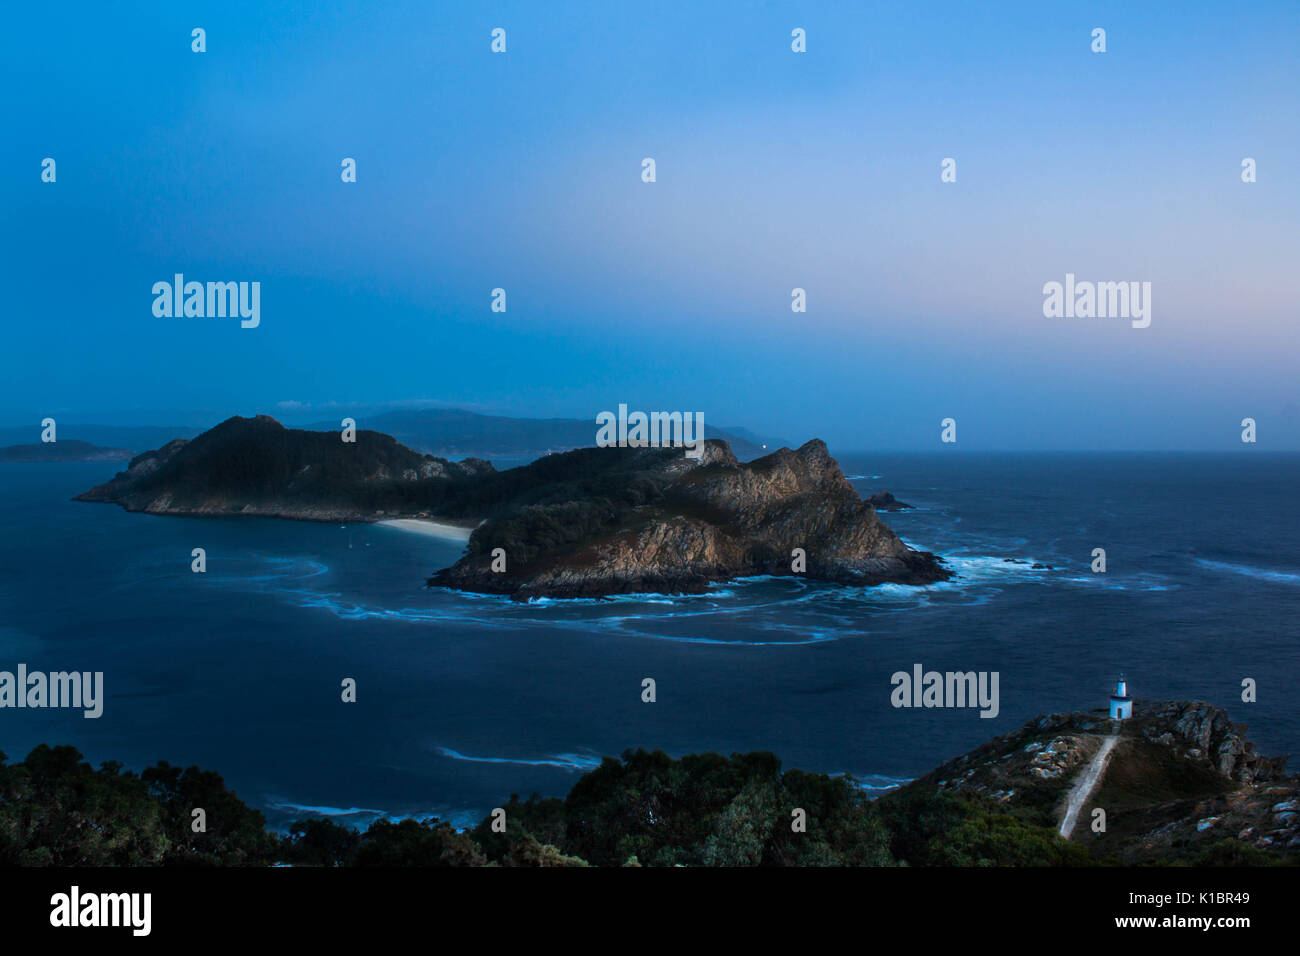 Paesaggio notturno fotografia dalle isole Cies in Galizia Spagna, vista aerea Foto Stock